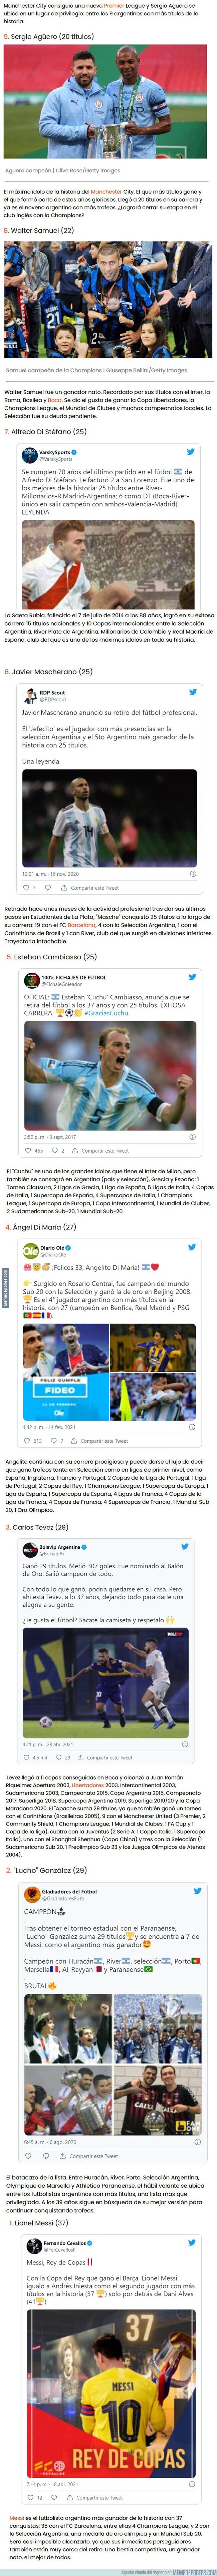 1134993 - Los futbolistas argentinos con más títulos en la historia: Agüero sigue sumando